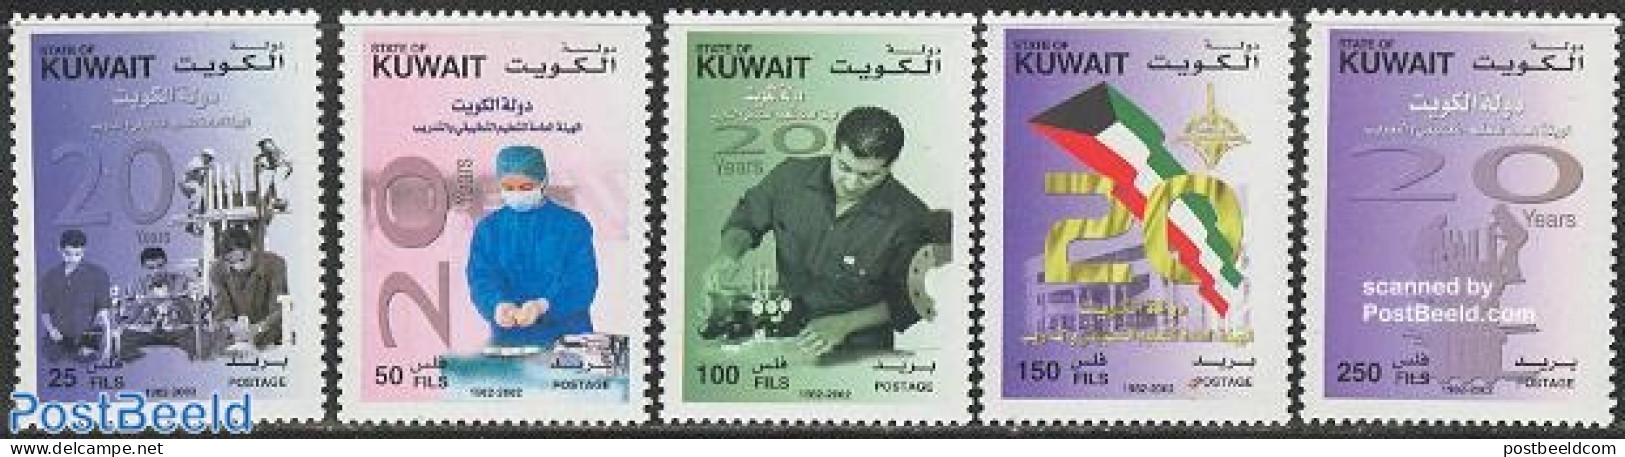 Kuwait 2002 Education & Training 5v, Mint NH, Science - Education - Kuwait